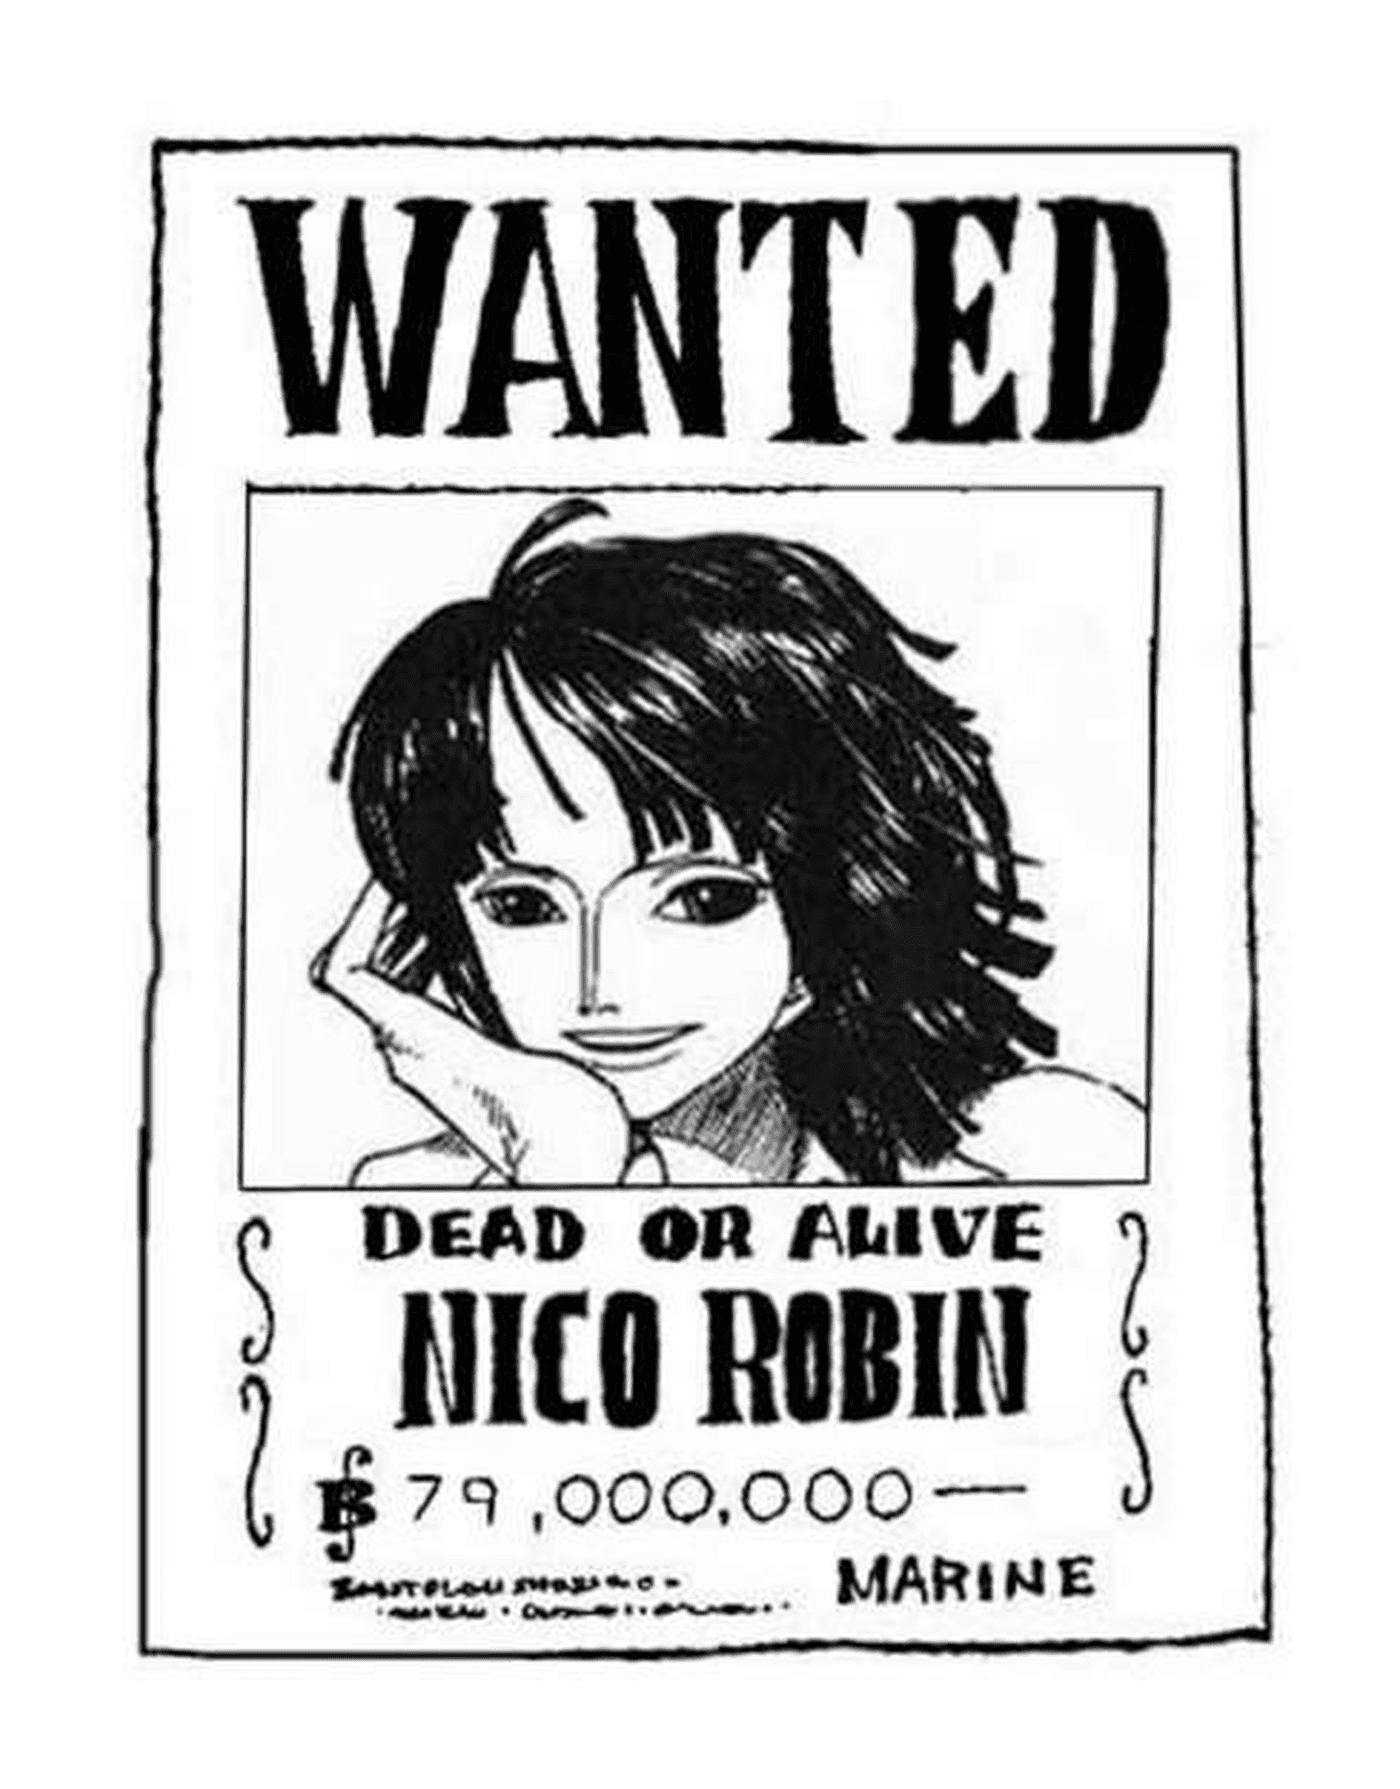  Gesucht Nico Robin[20420] Gesucht Nico Robin, tot oder lebendig 